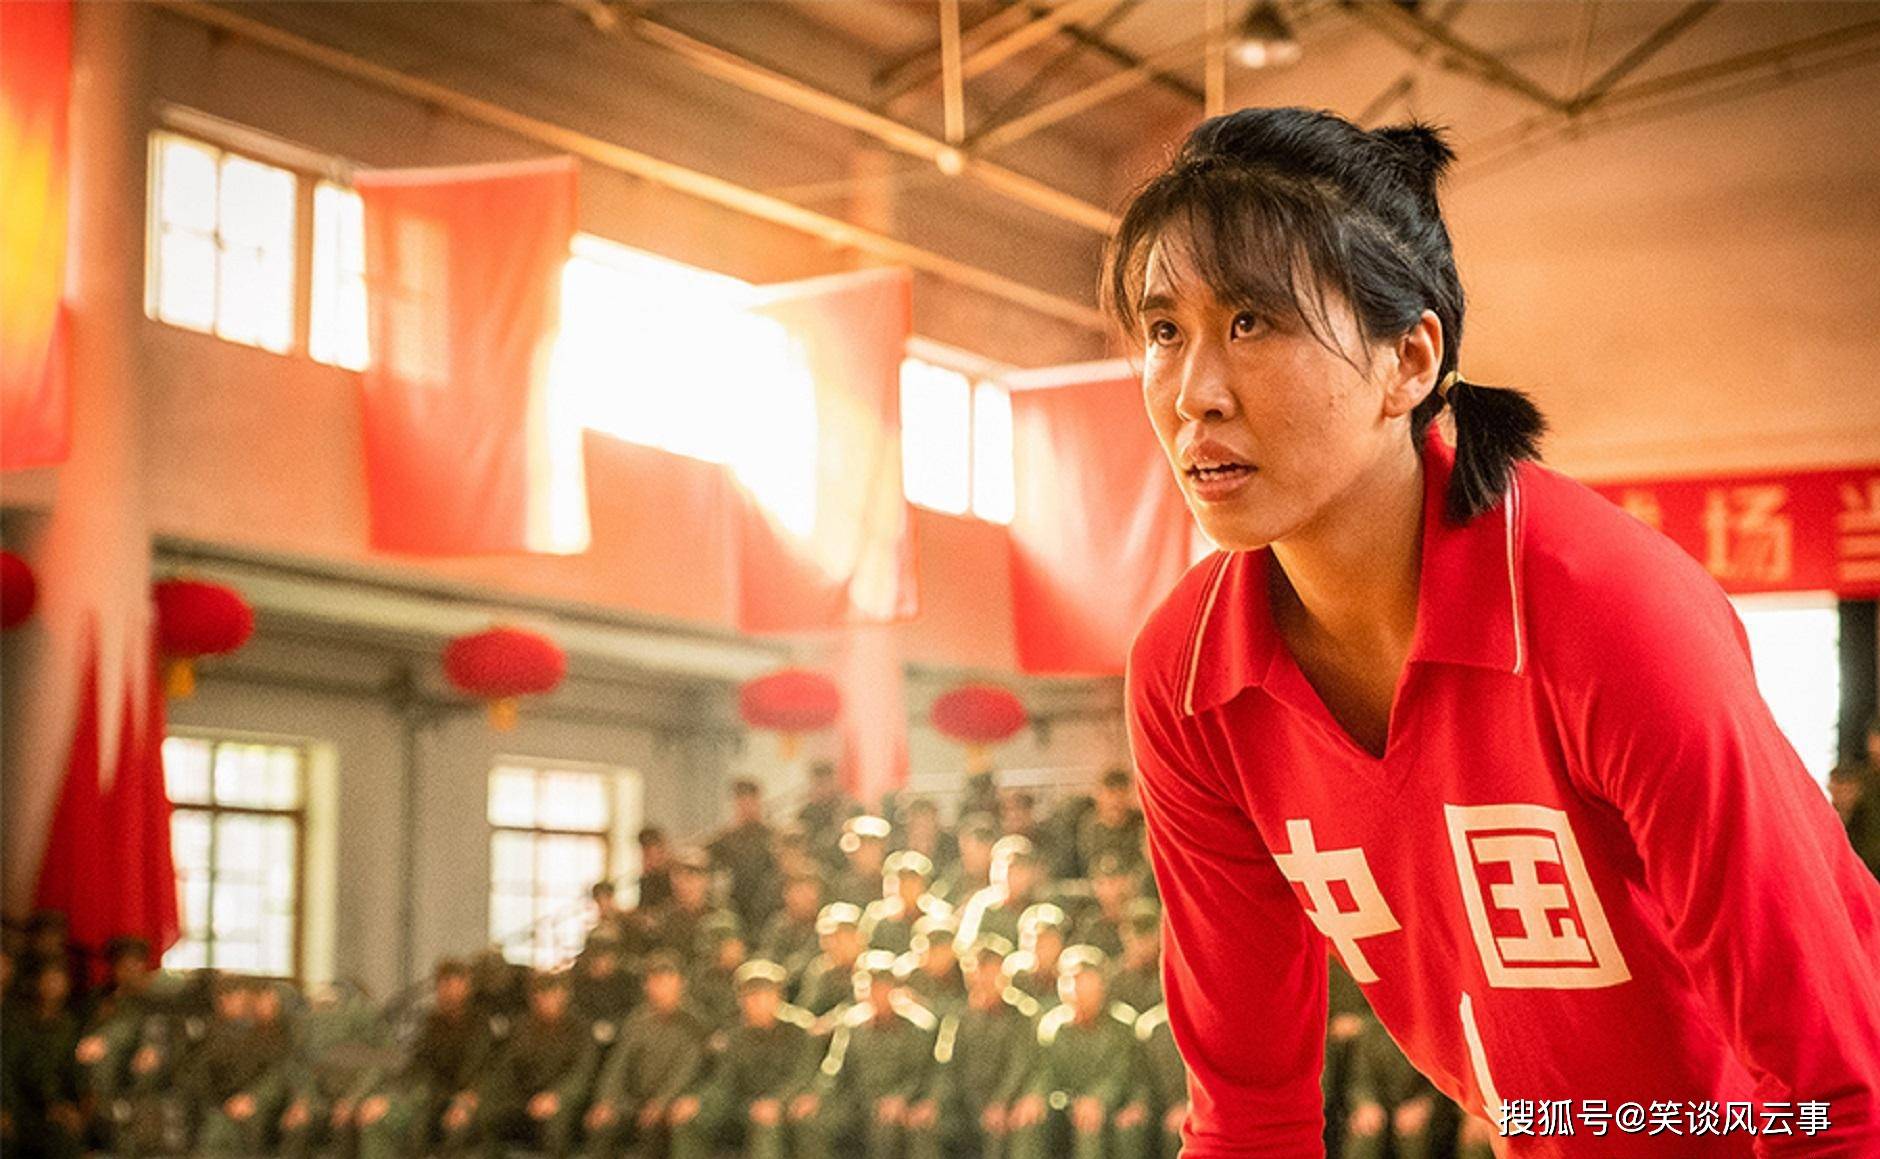 原创电影夺冠中的中国女排精神也是一种值得参考的职场精神